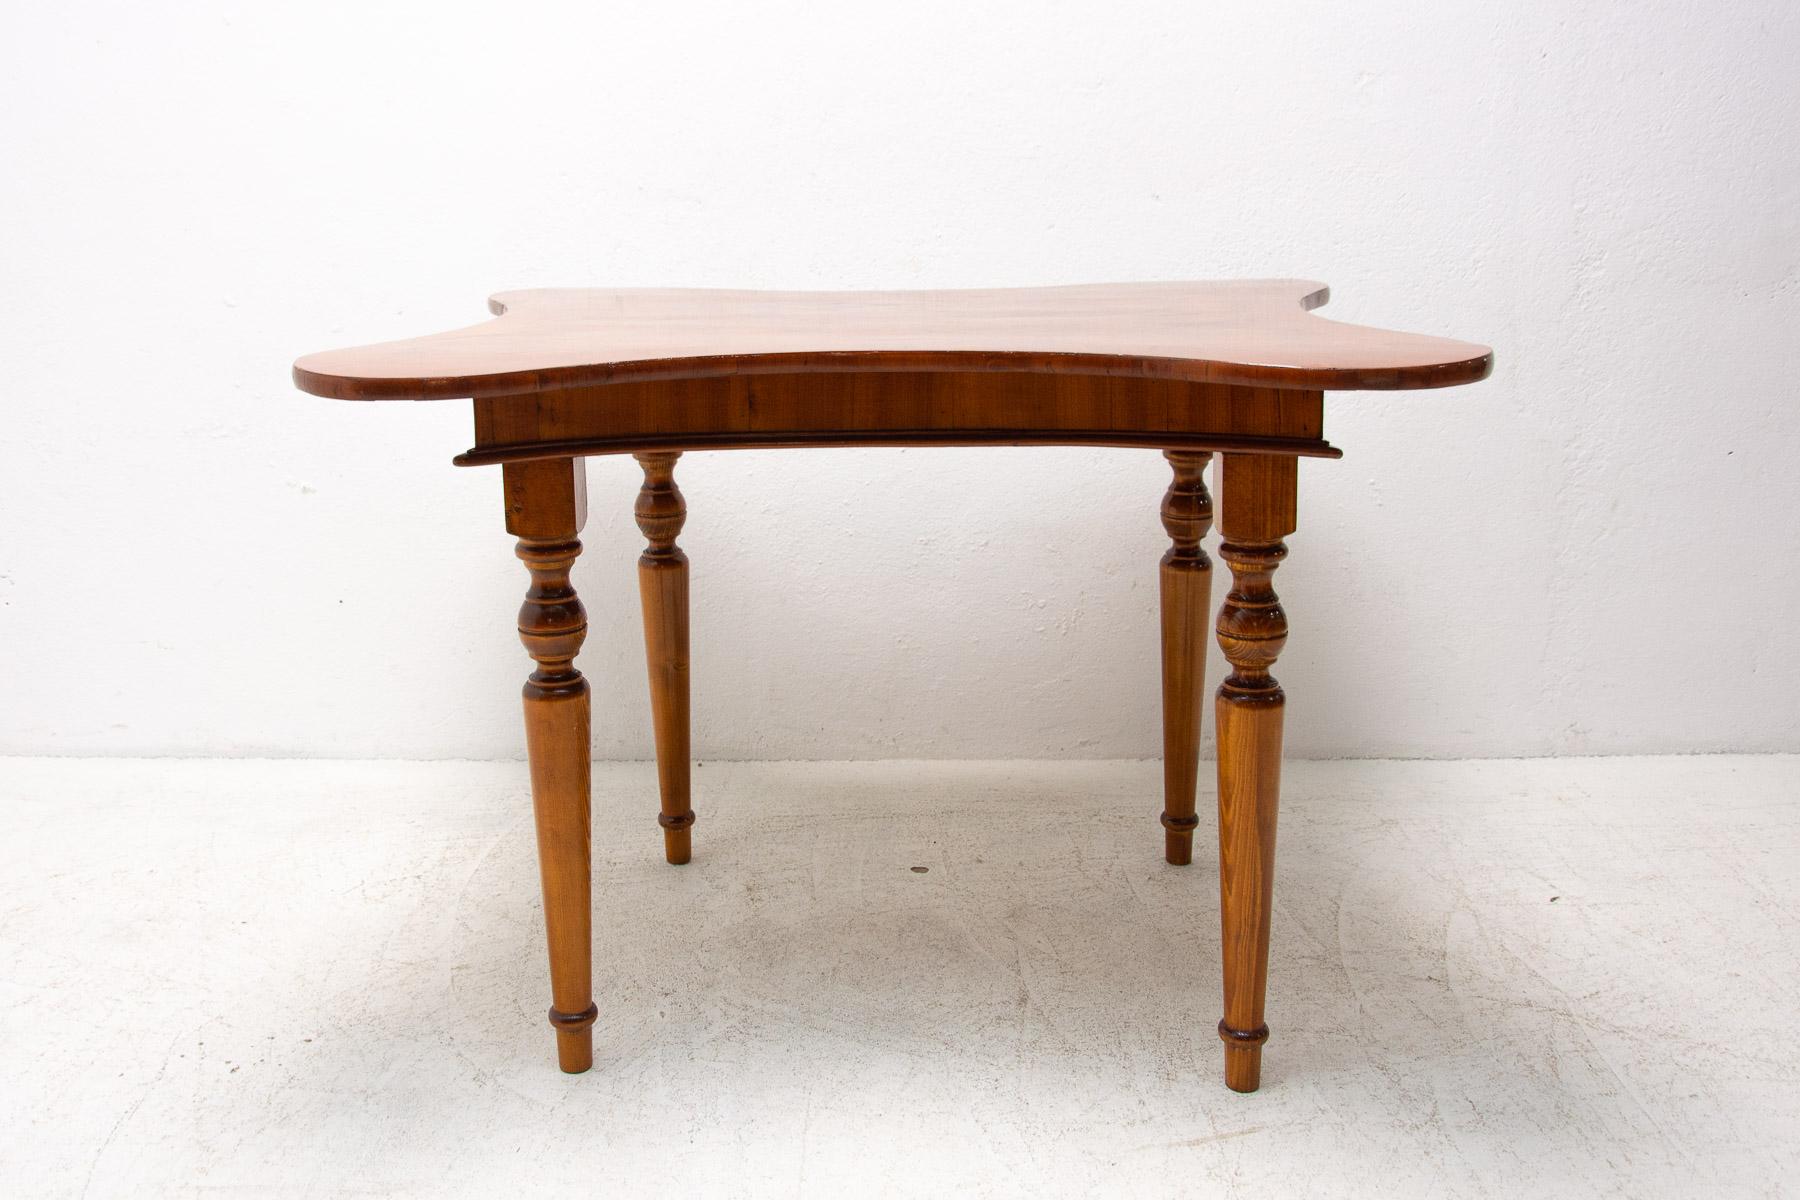 Cette table à manger marquetée de style néo-baroque a été fabriquée en Autriche-Hongrie à la fin du XIXe siècle. Il est en noyer, les pieds sont en hêtre. En forme de papillon.

La table est entièrement rénovée et en très bon état.

Mesures :